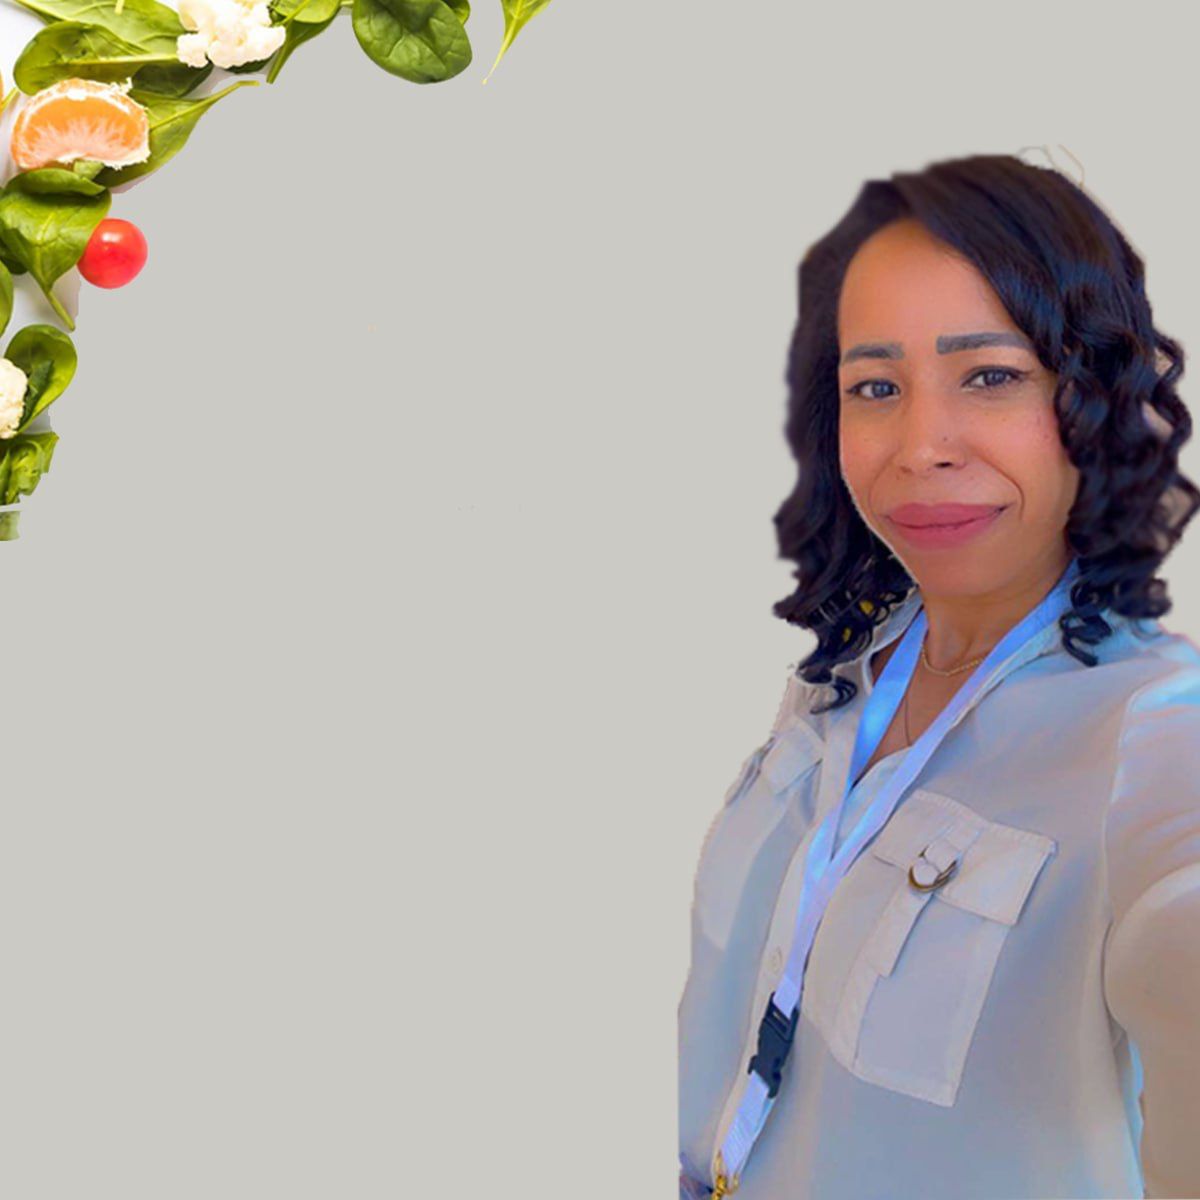 Dr. Fatma Al Zahraa Hussein Amer